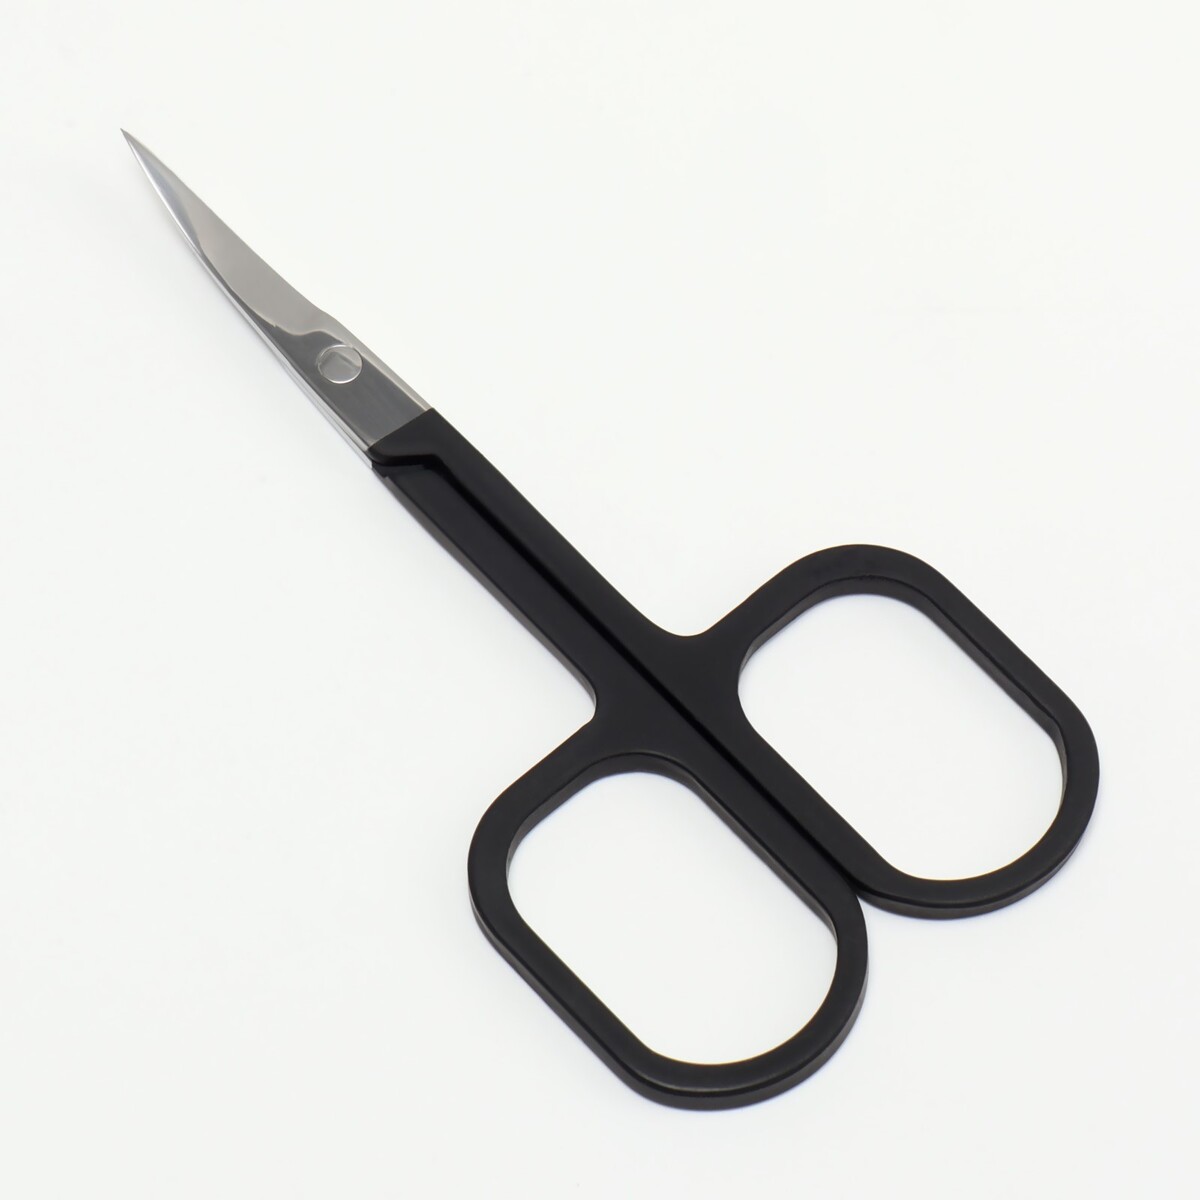 Ножницы маникюрные, узкие, загнутые, с прорезиненными ручками, 9 см, цвет серебристый/черный ножницы маникюрные загнутые широкие 8 8 см хамелеон